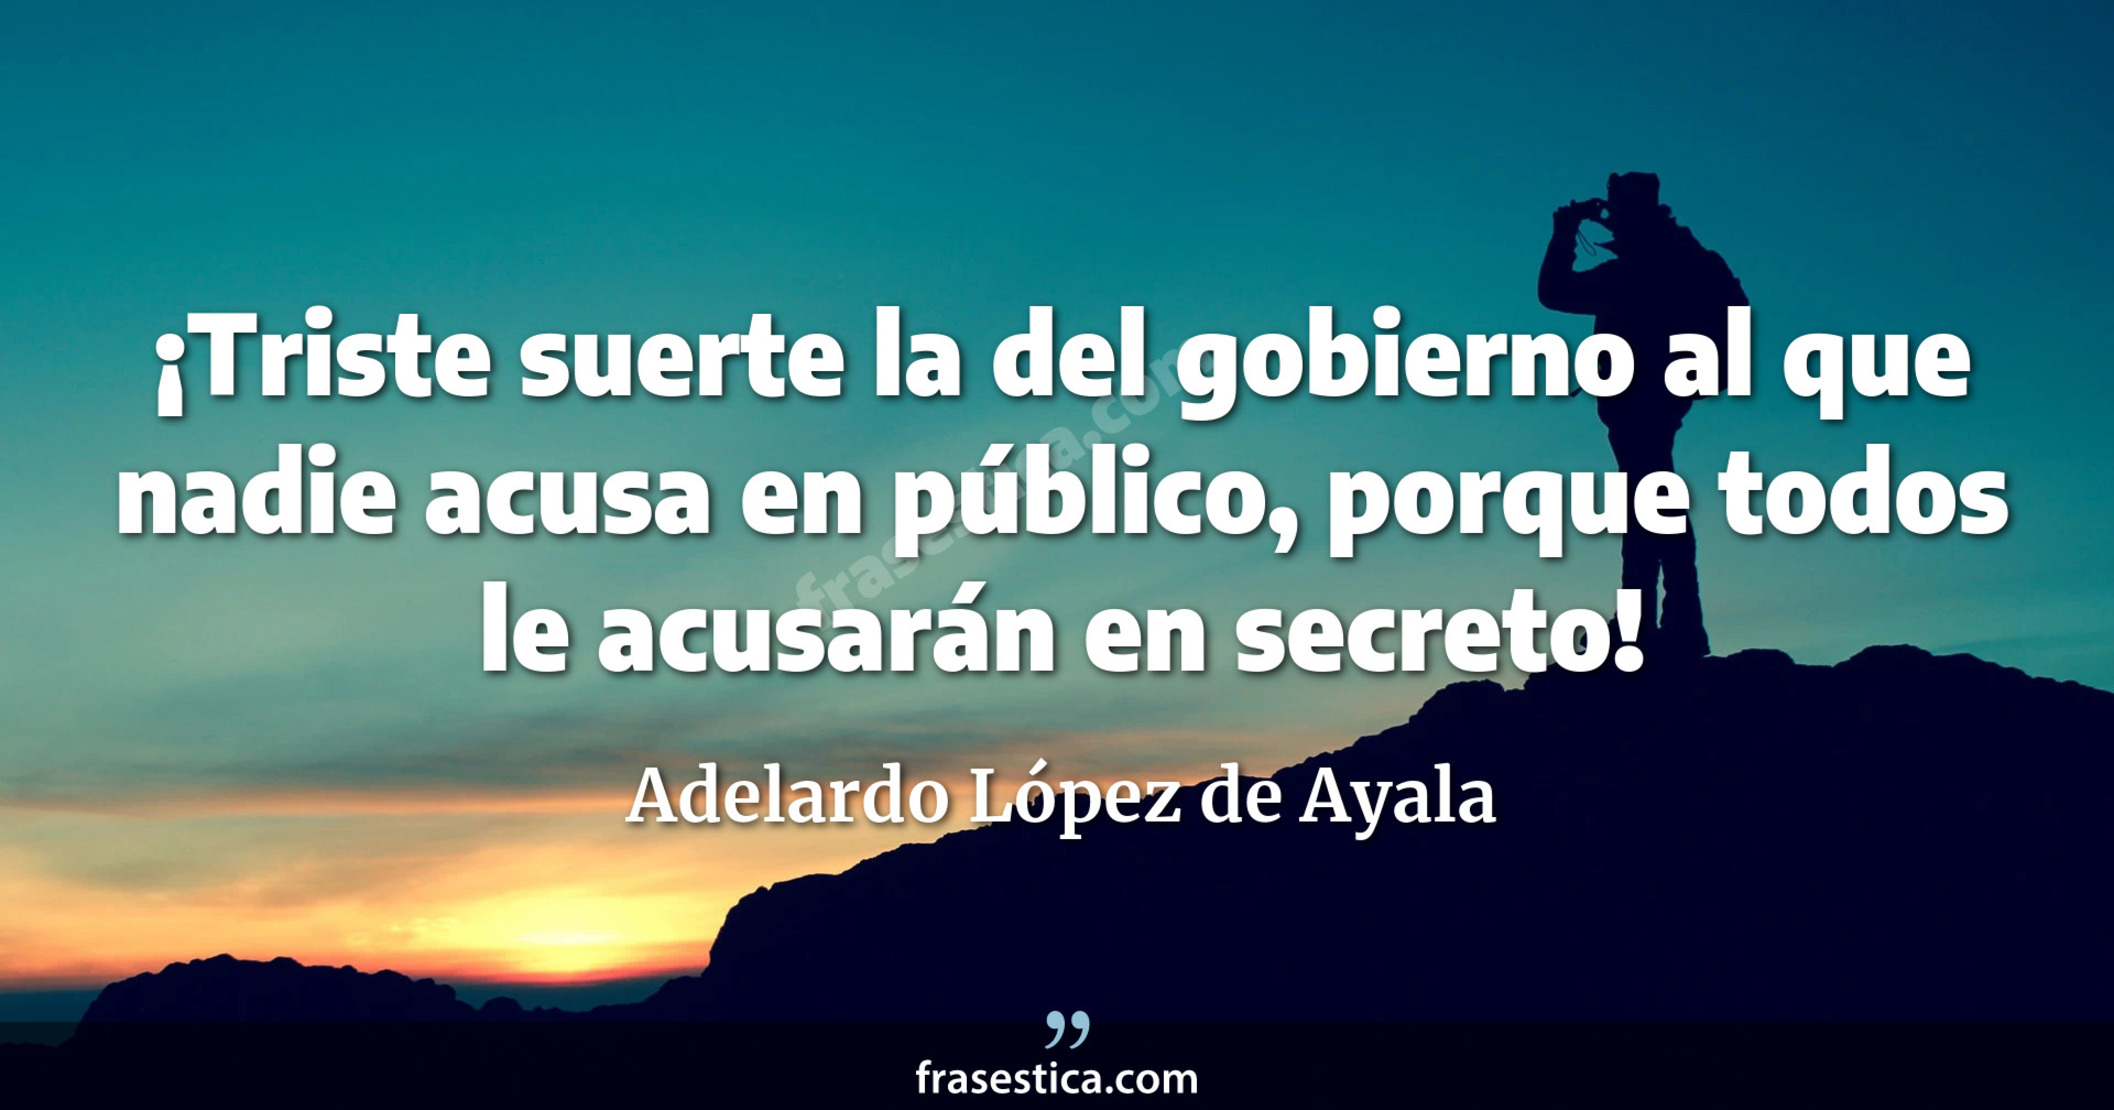 ¡Triste suerte la del gobierno al que nadie acusa en público, porque todos le acusarán en secreto! - Adelardo López de Ayala